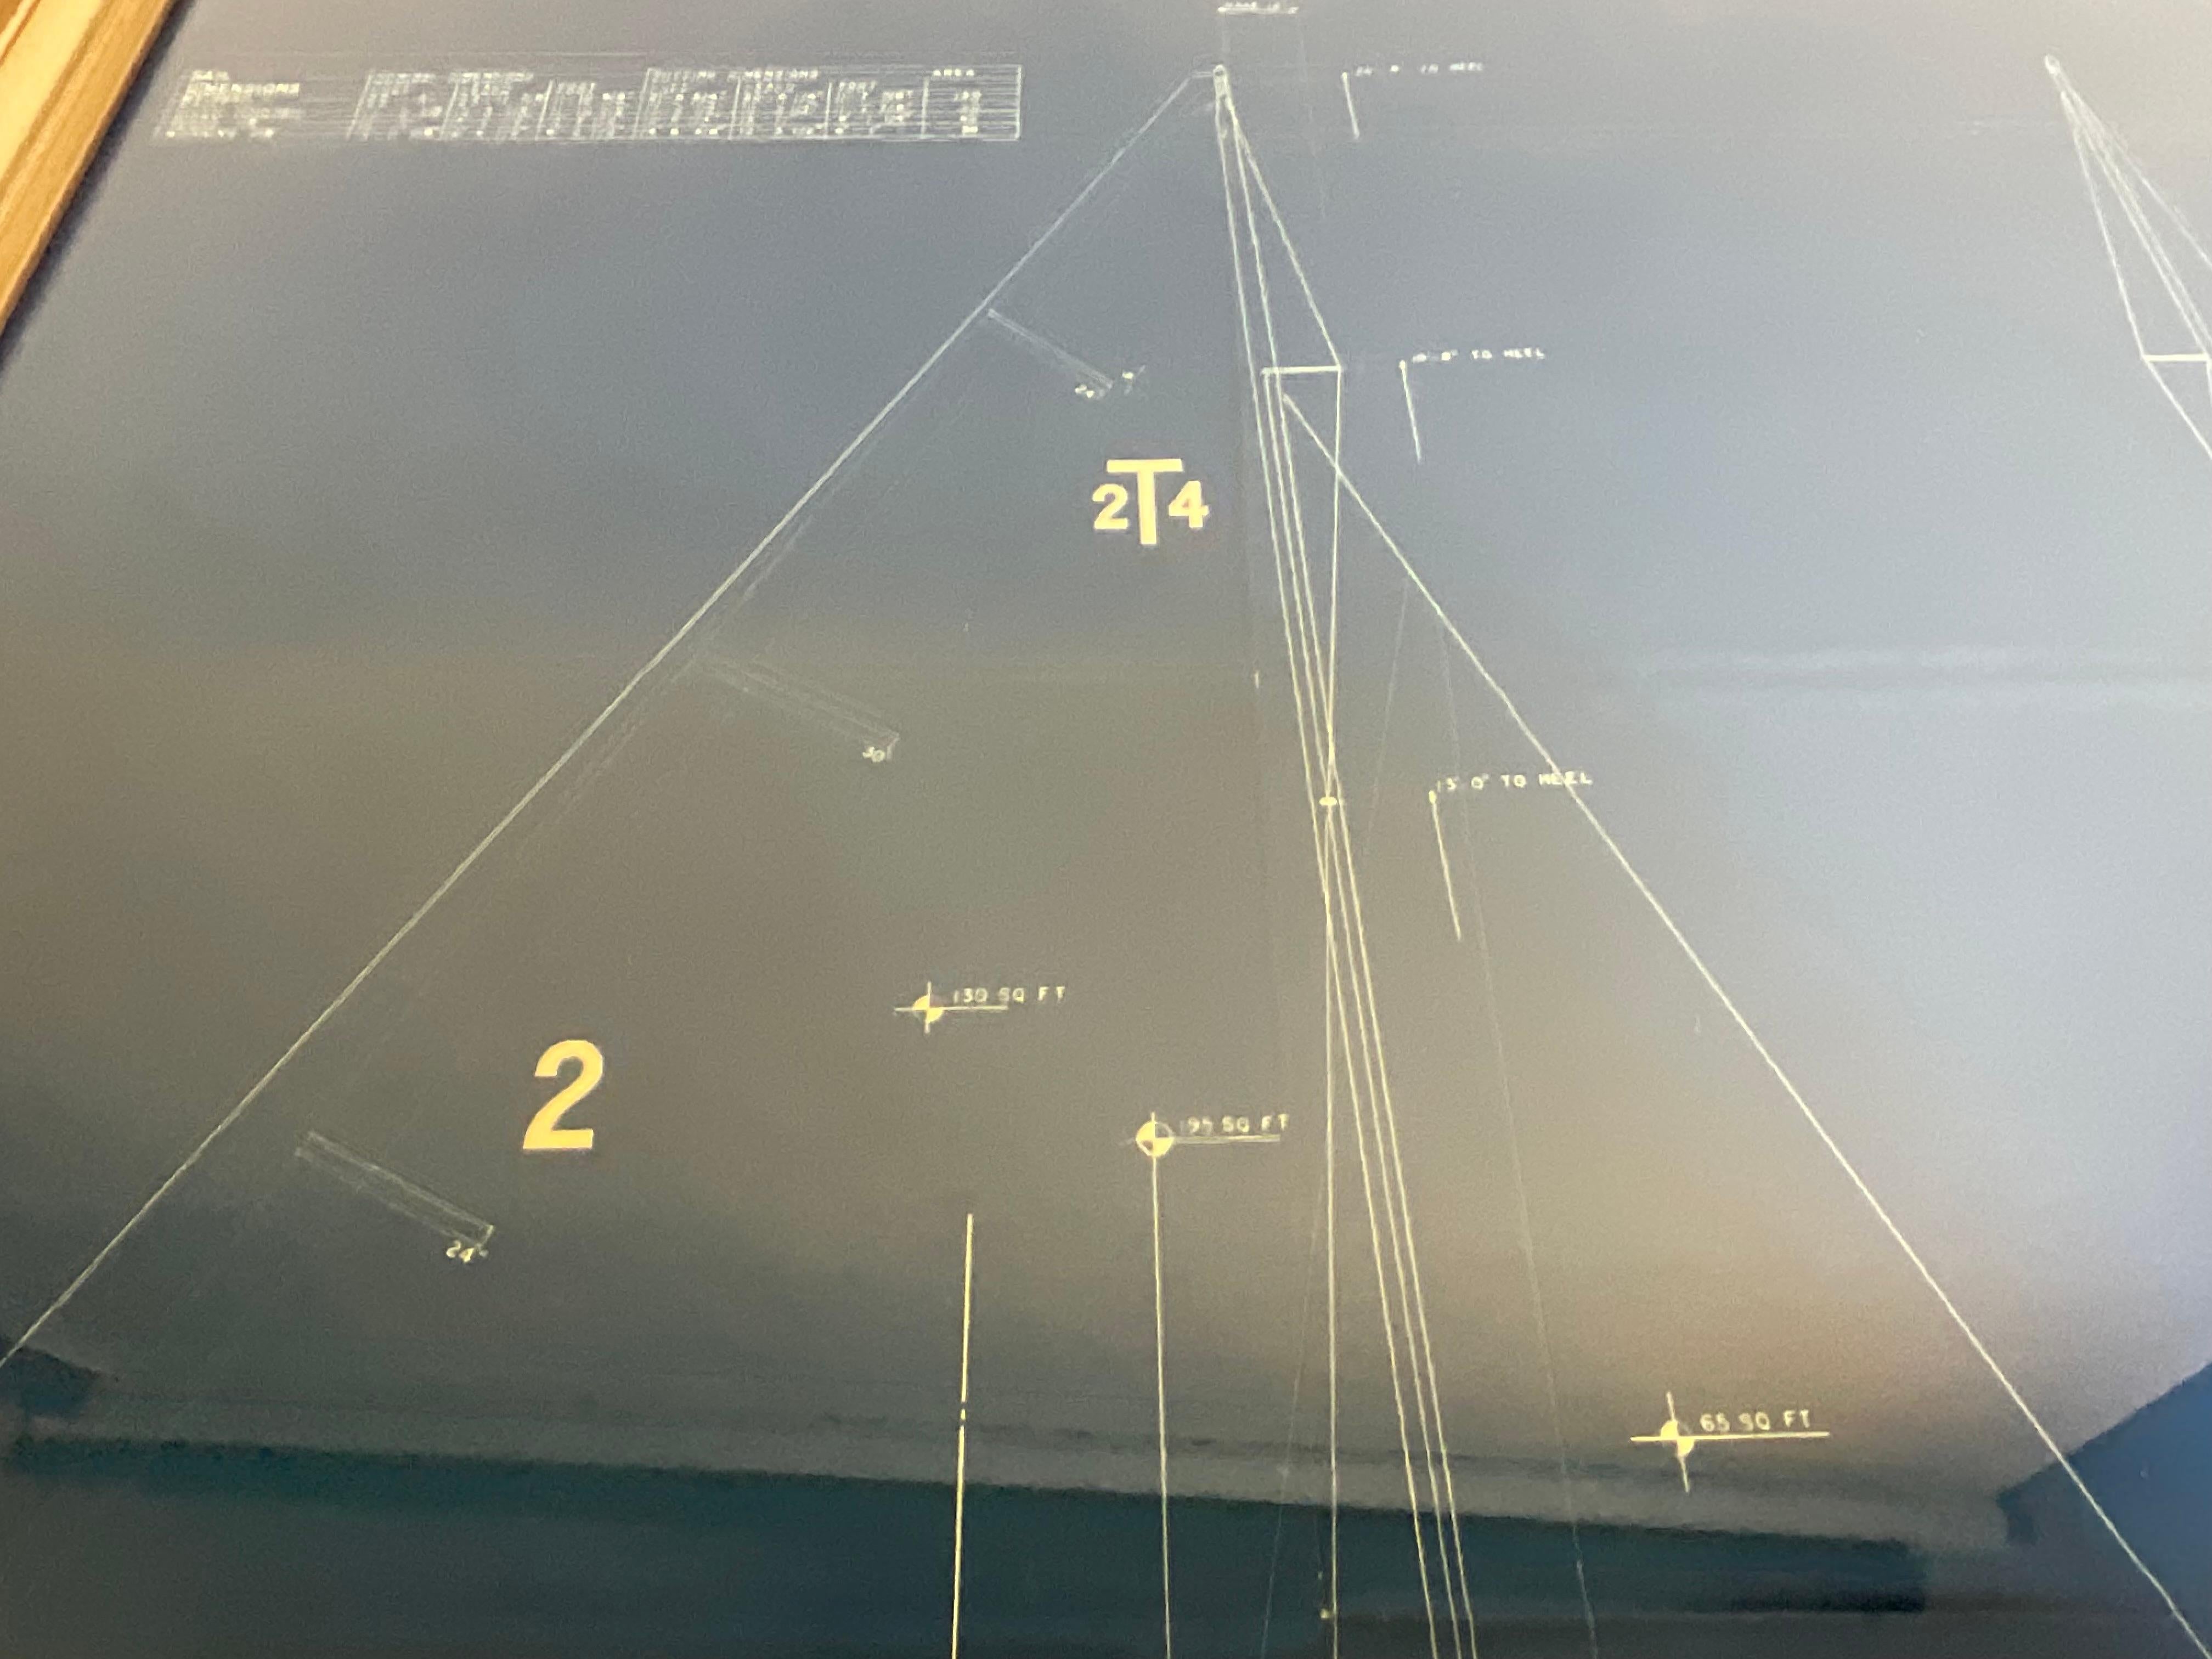 Yacht Blueprint Of A Sailing Yacht 2